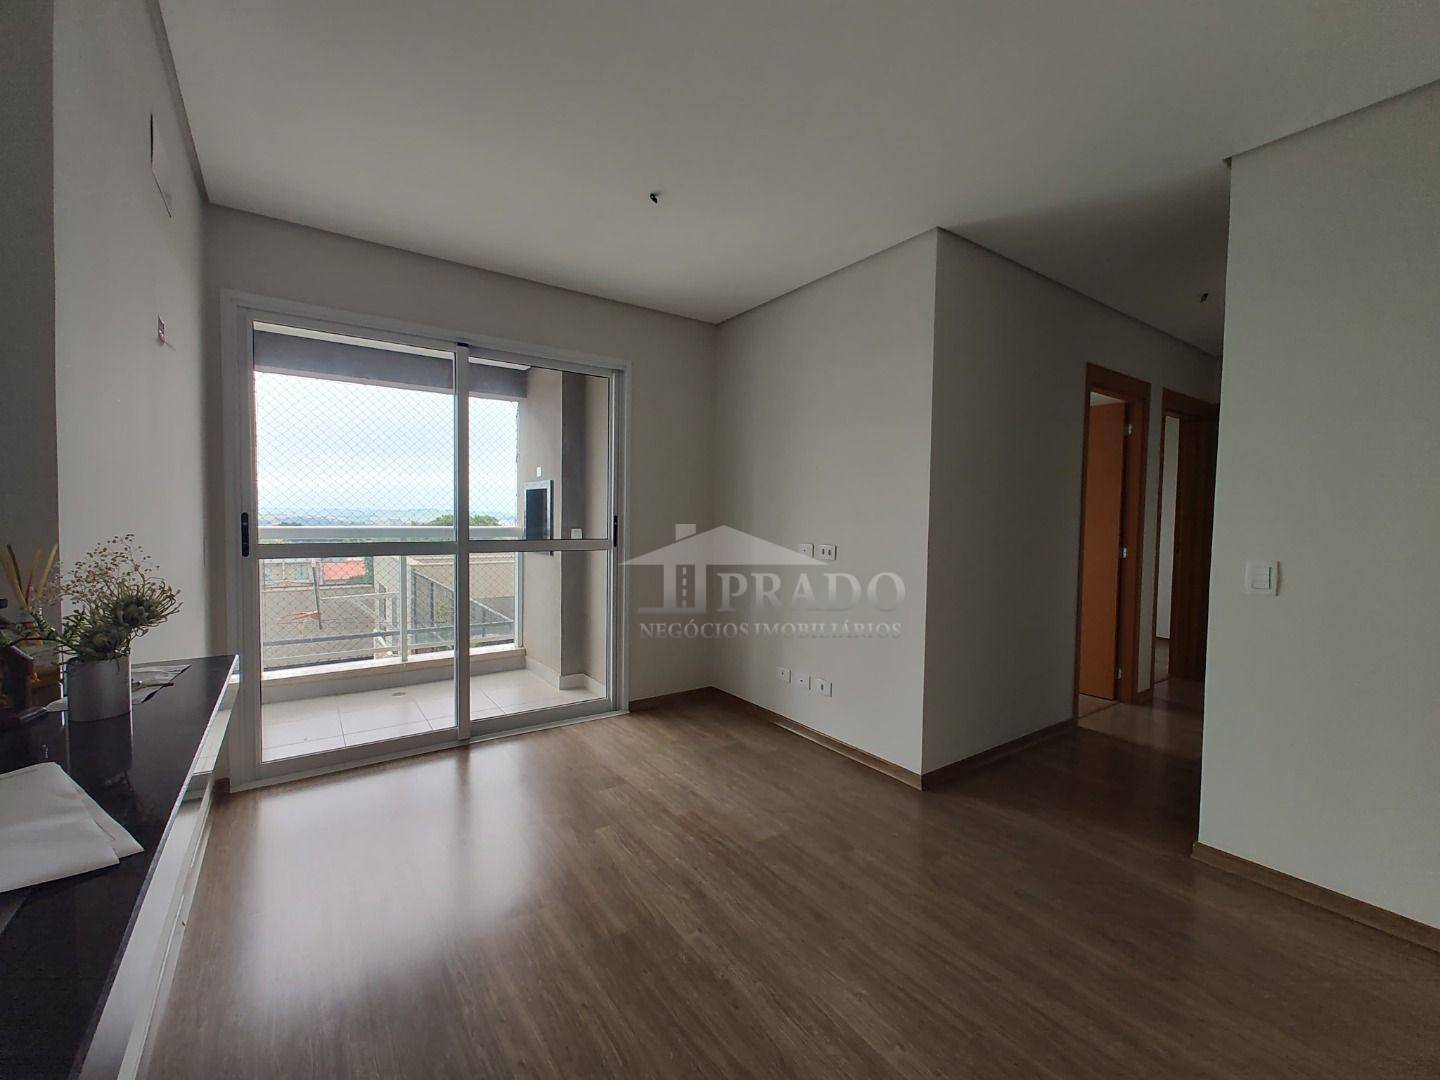 Apartamento, 3 quartos, 74 m² - Foto 2